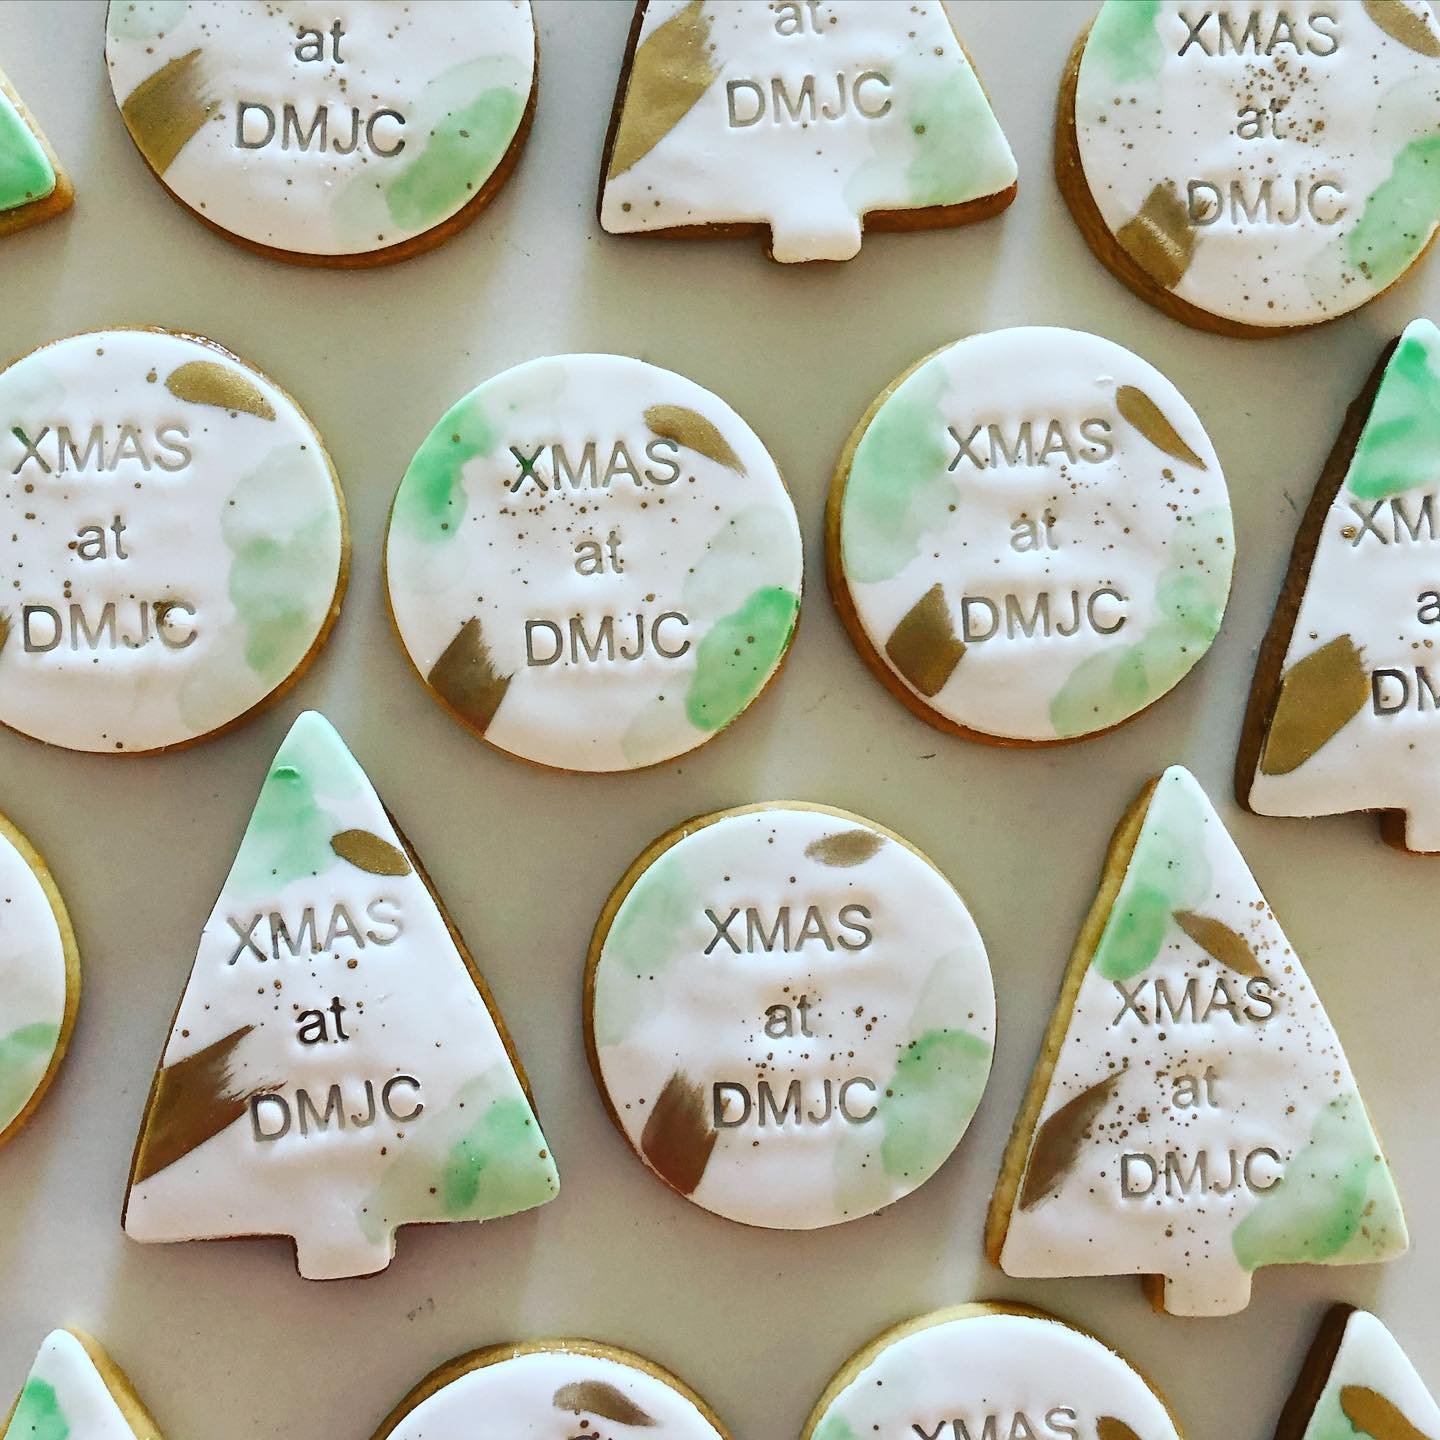 XMAS at DMJC Cookies.jpg